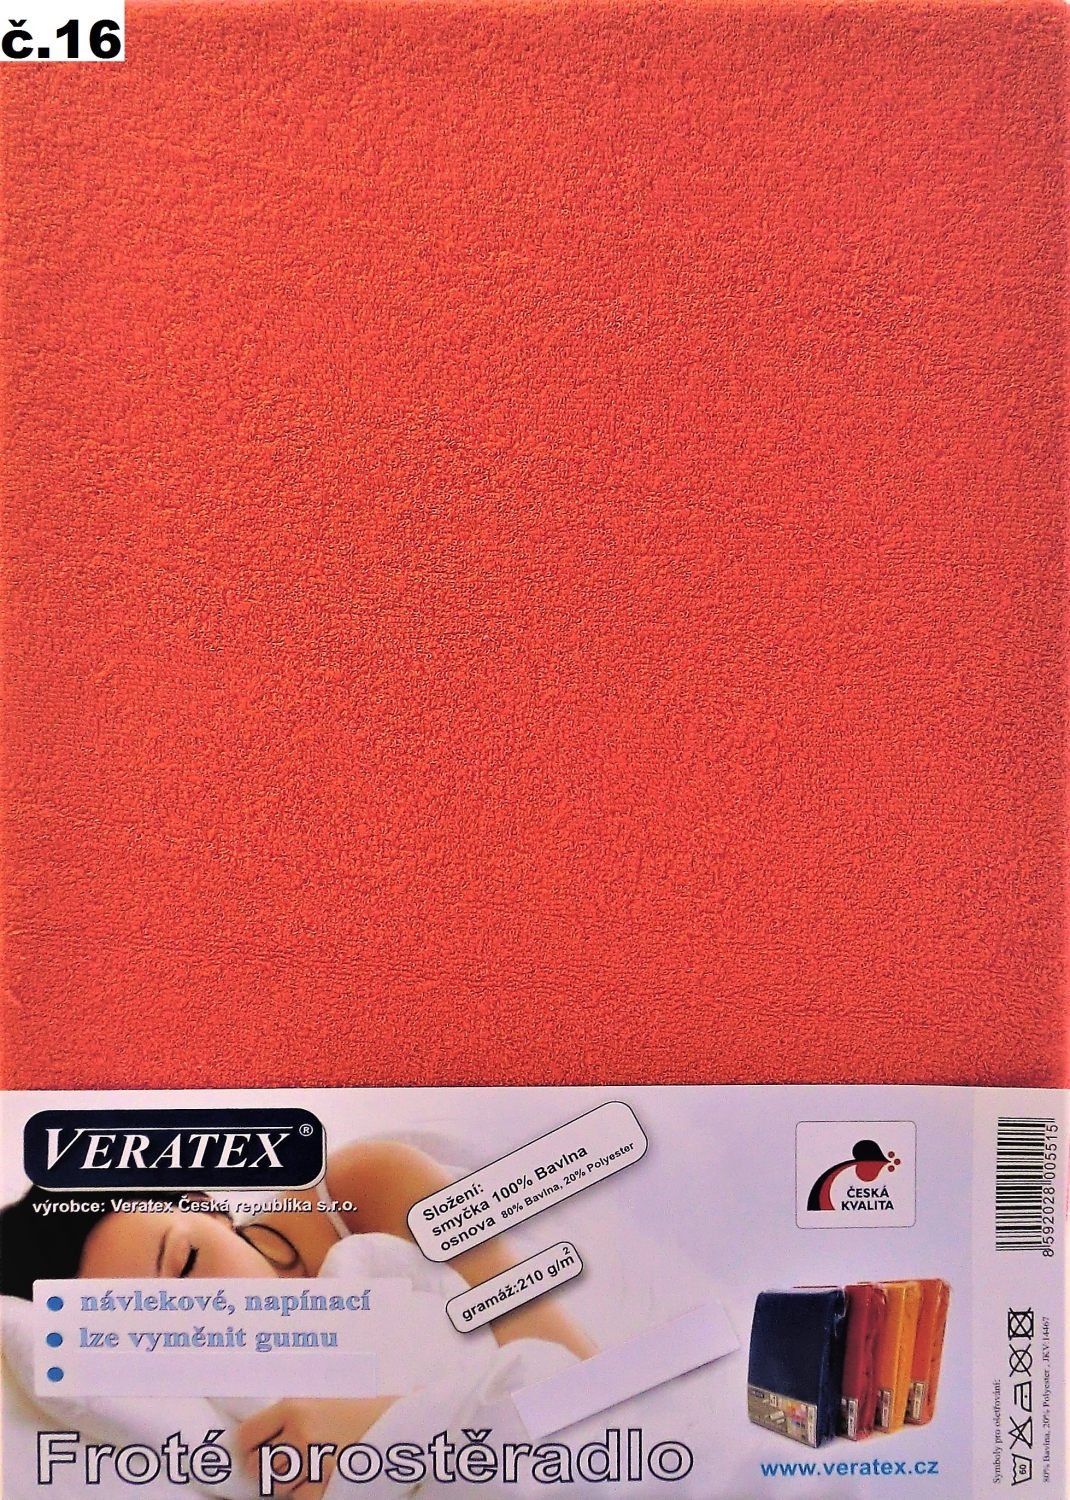 Veratex Froté prostěradlo 90x200/20cm (č.16 malina)